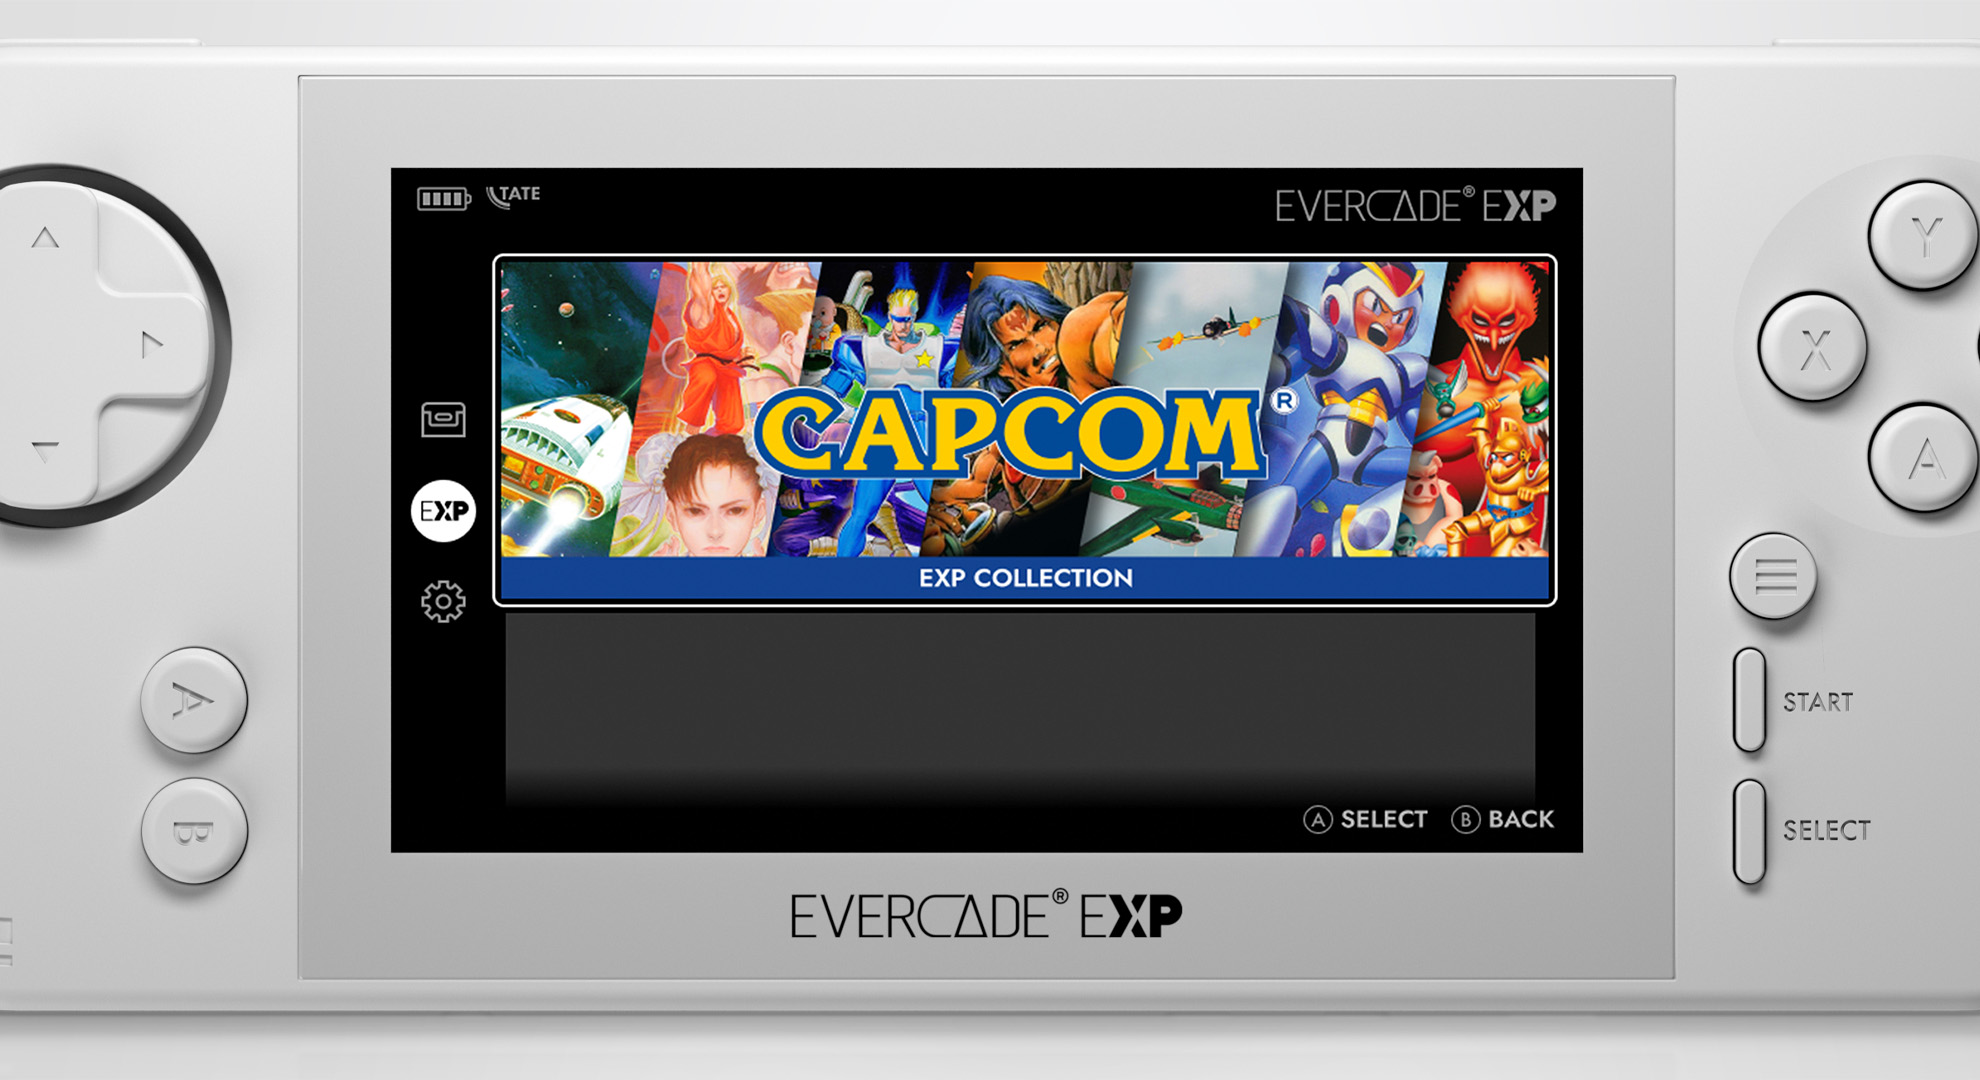 Evercade EXP presenterà 18 titoli Capcom integrati - News